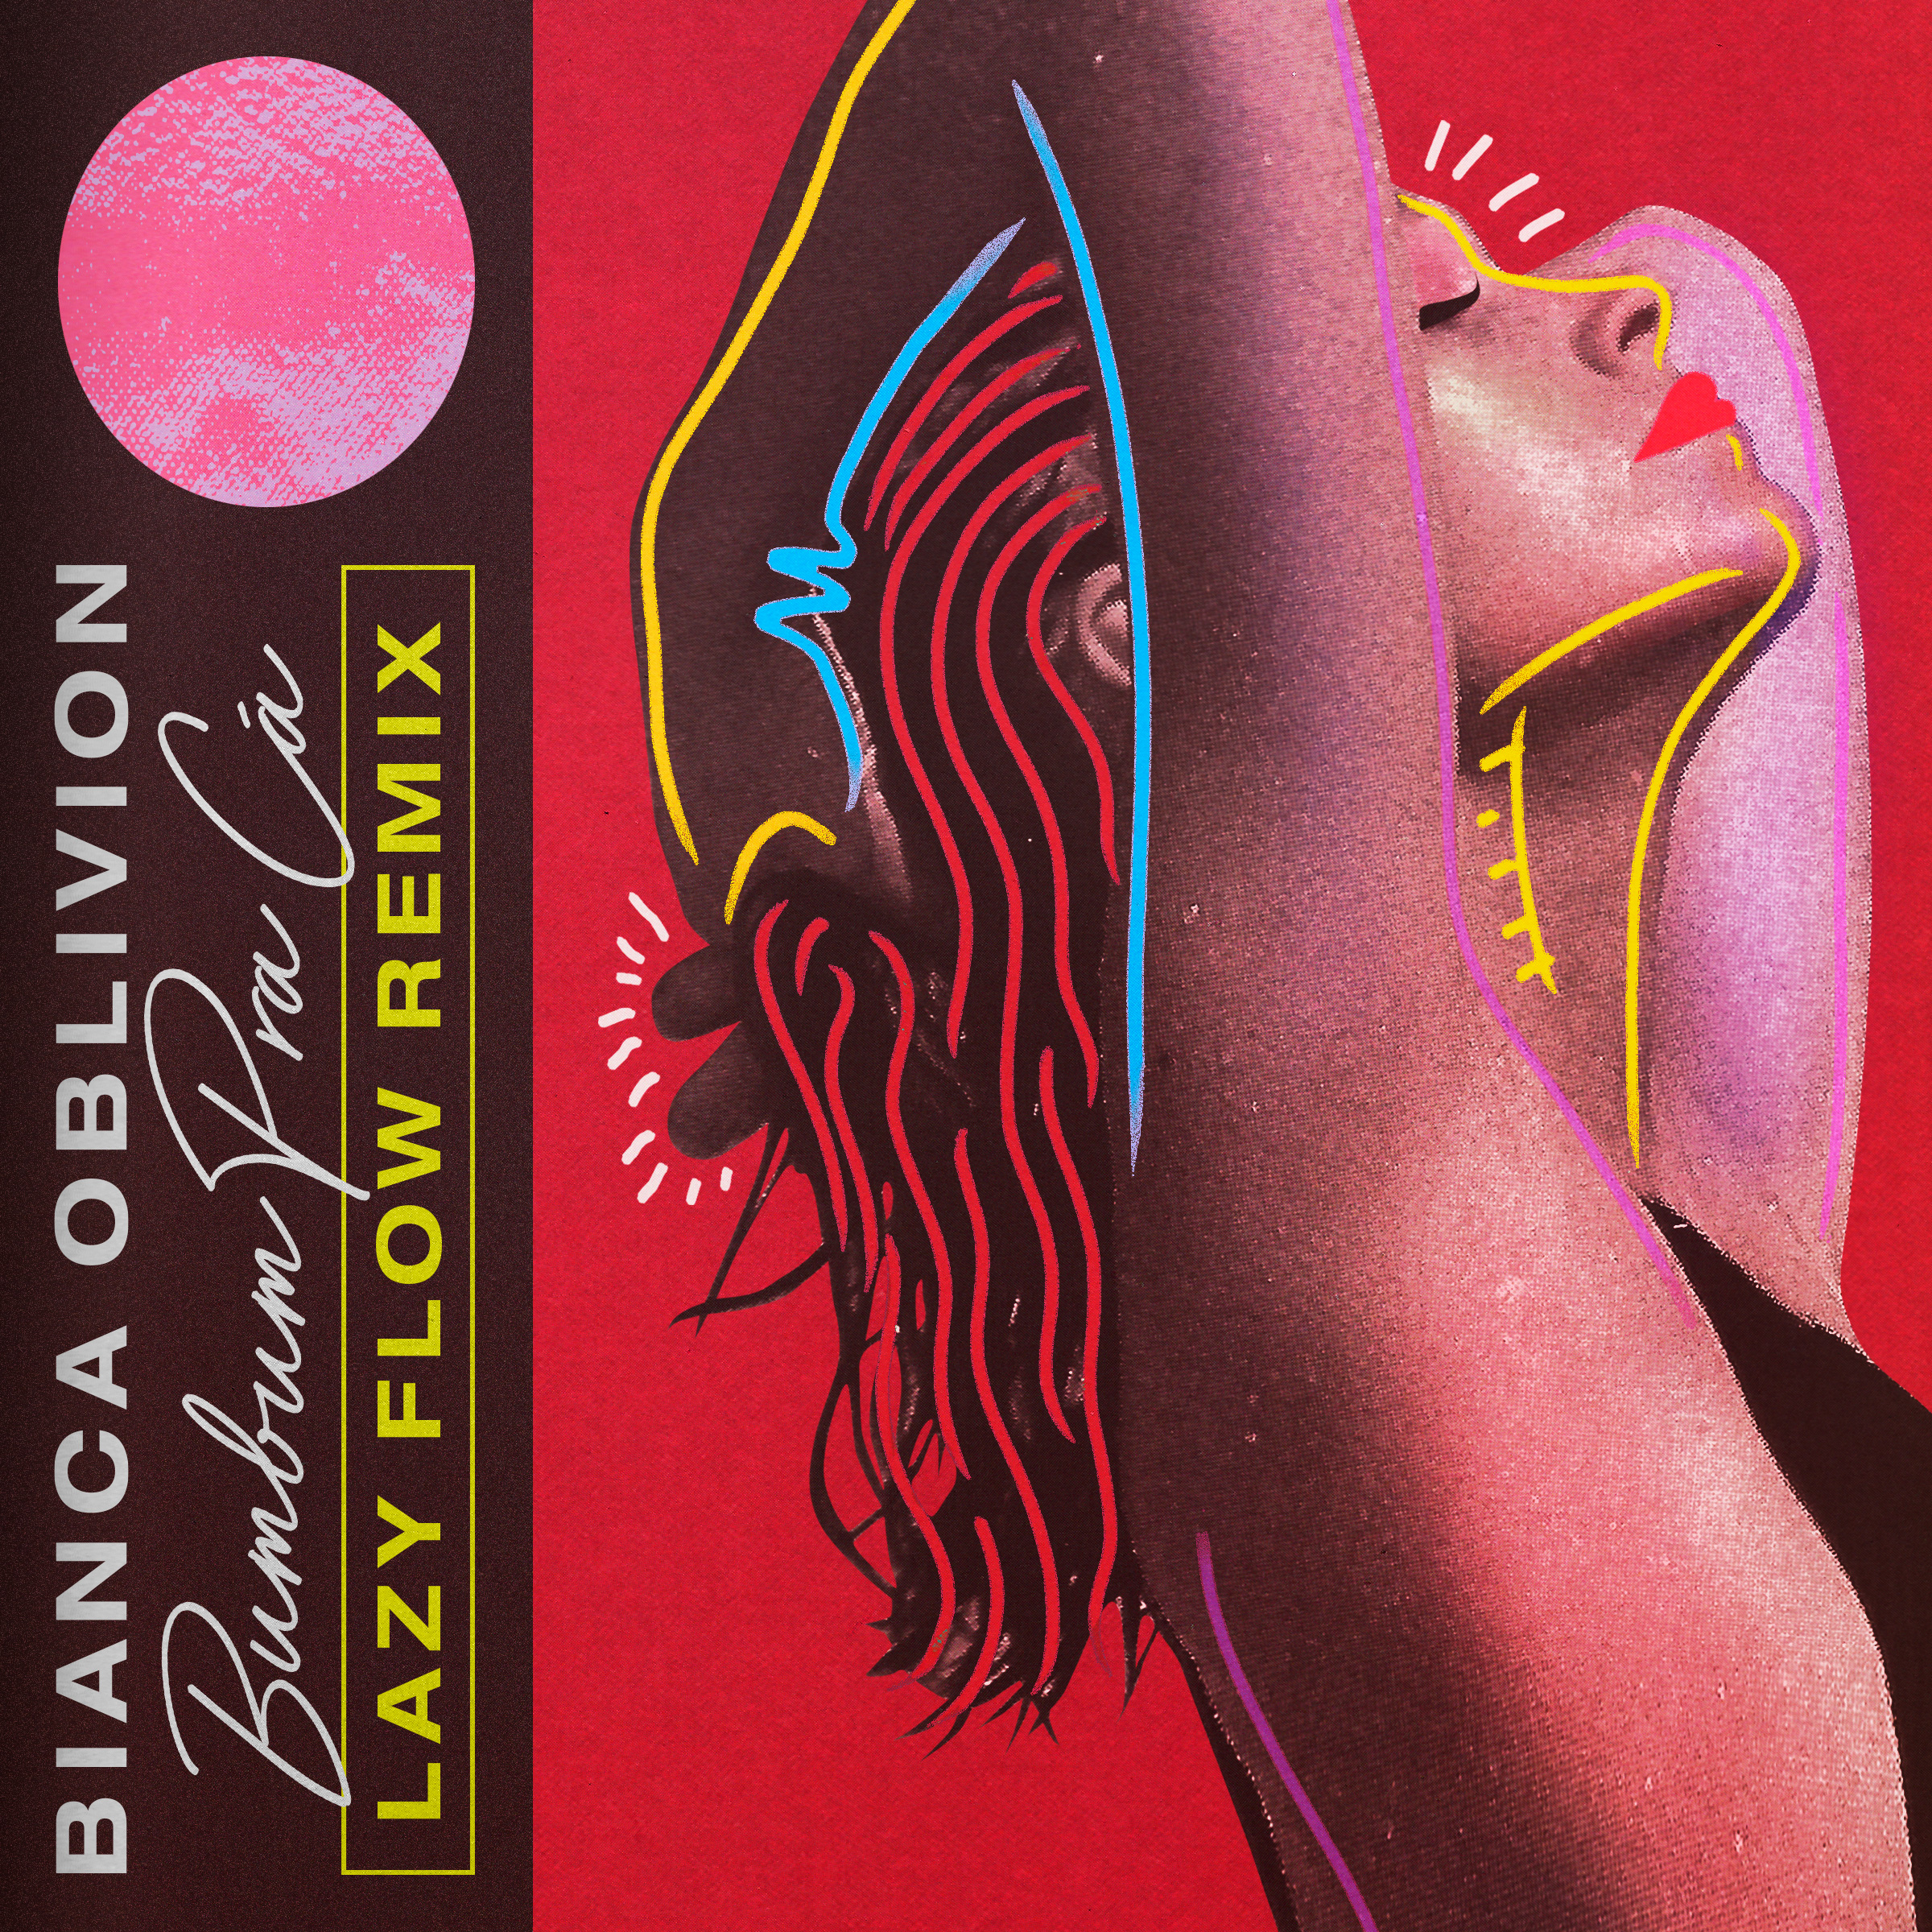 Herunterladen [PREMIERE] Bianca Oblivion - Bumbum Pra Cá (Lazy Flow remix)